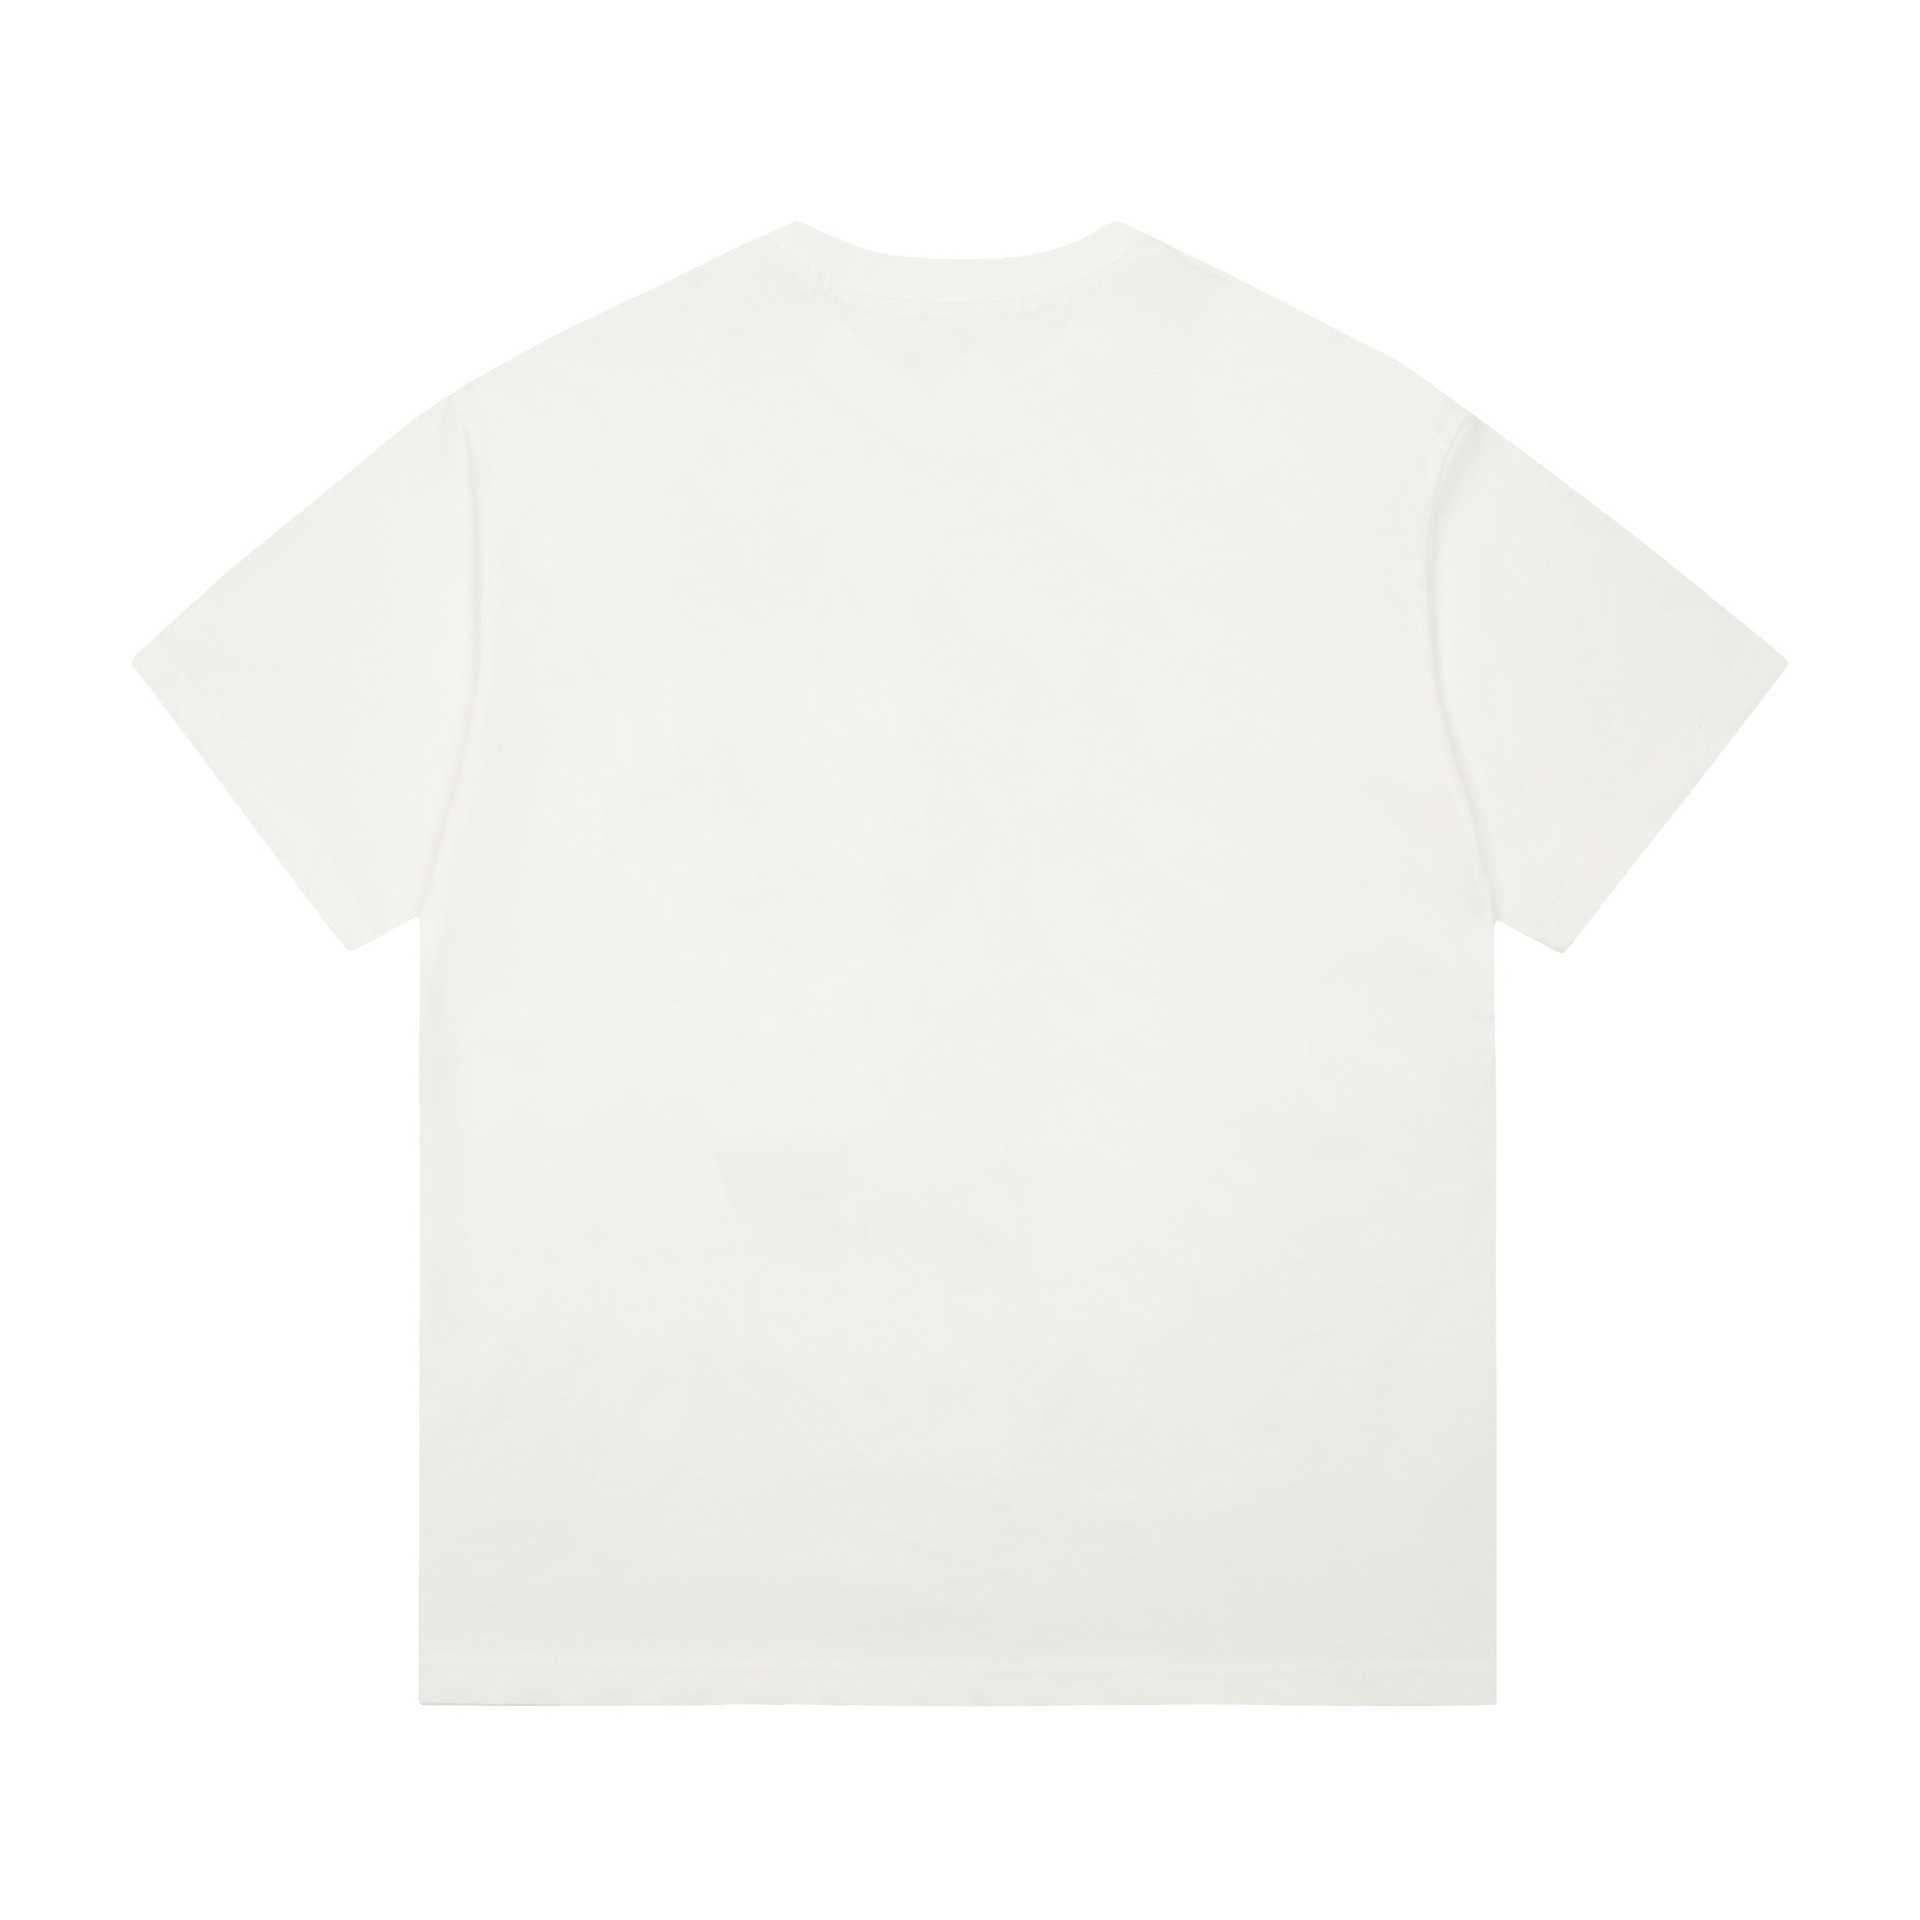 Designer nouvelles femmes t-shirt Version correcte classique basique solide petite lettre impression OS T-shirt à manches lâches